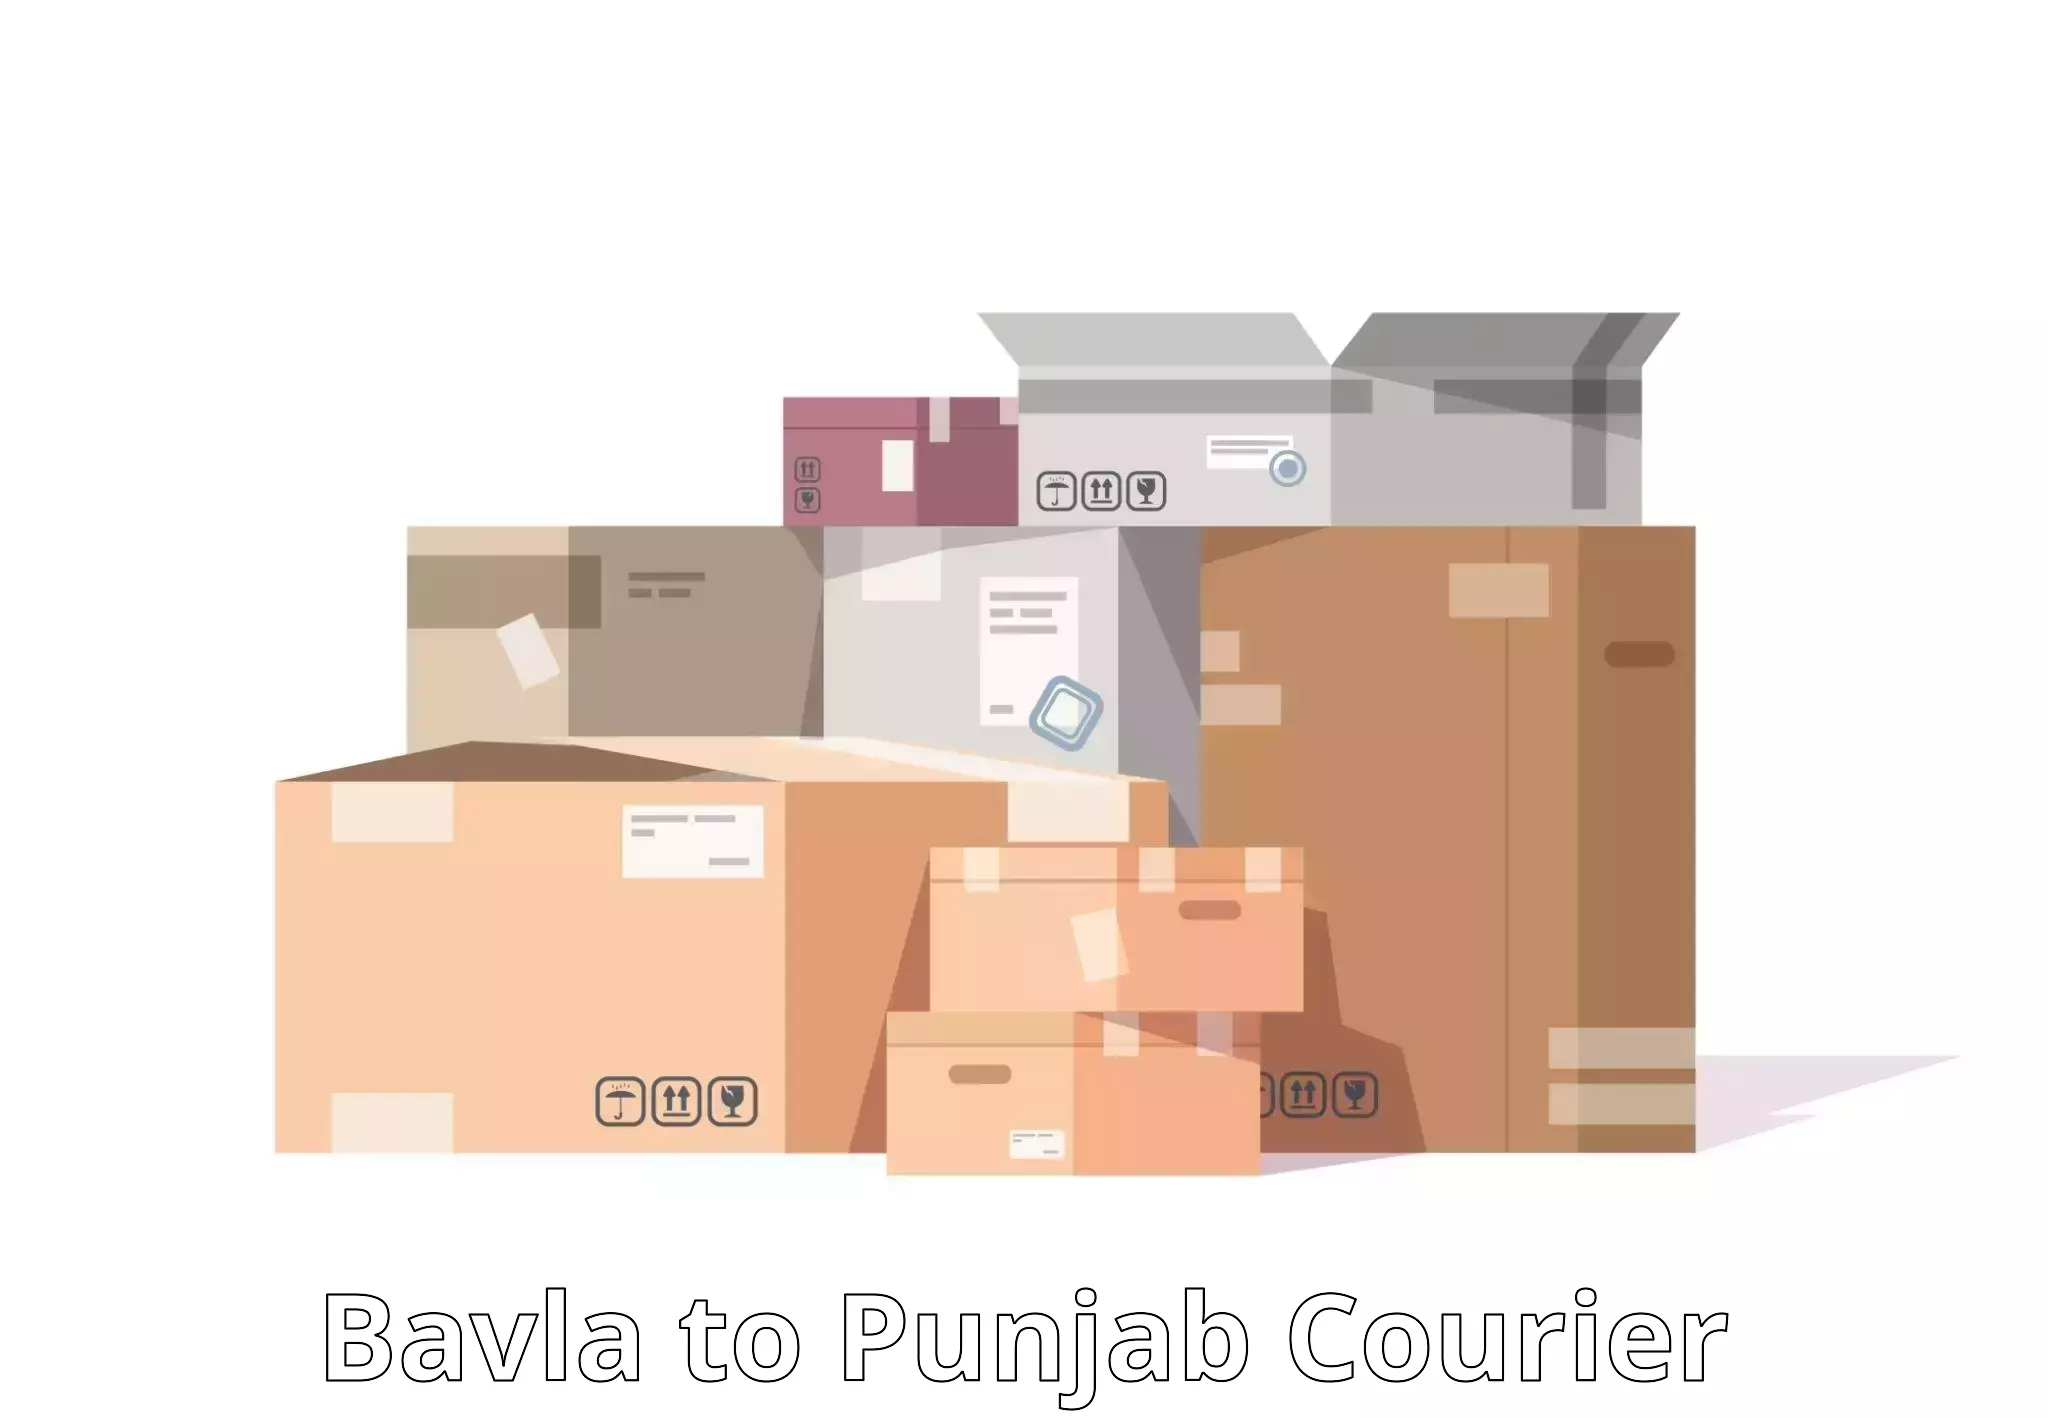 Parcel service for businesses Bavla to Abohar